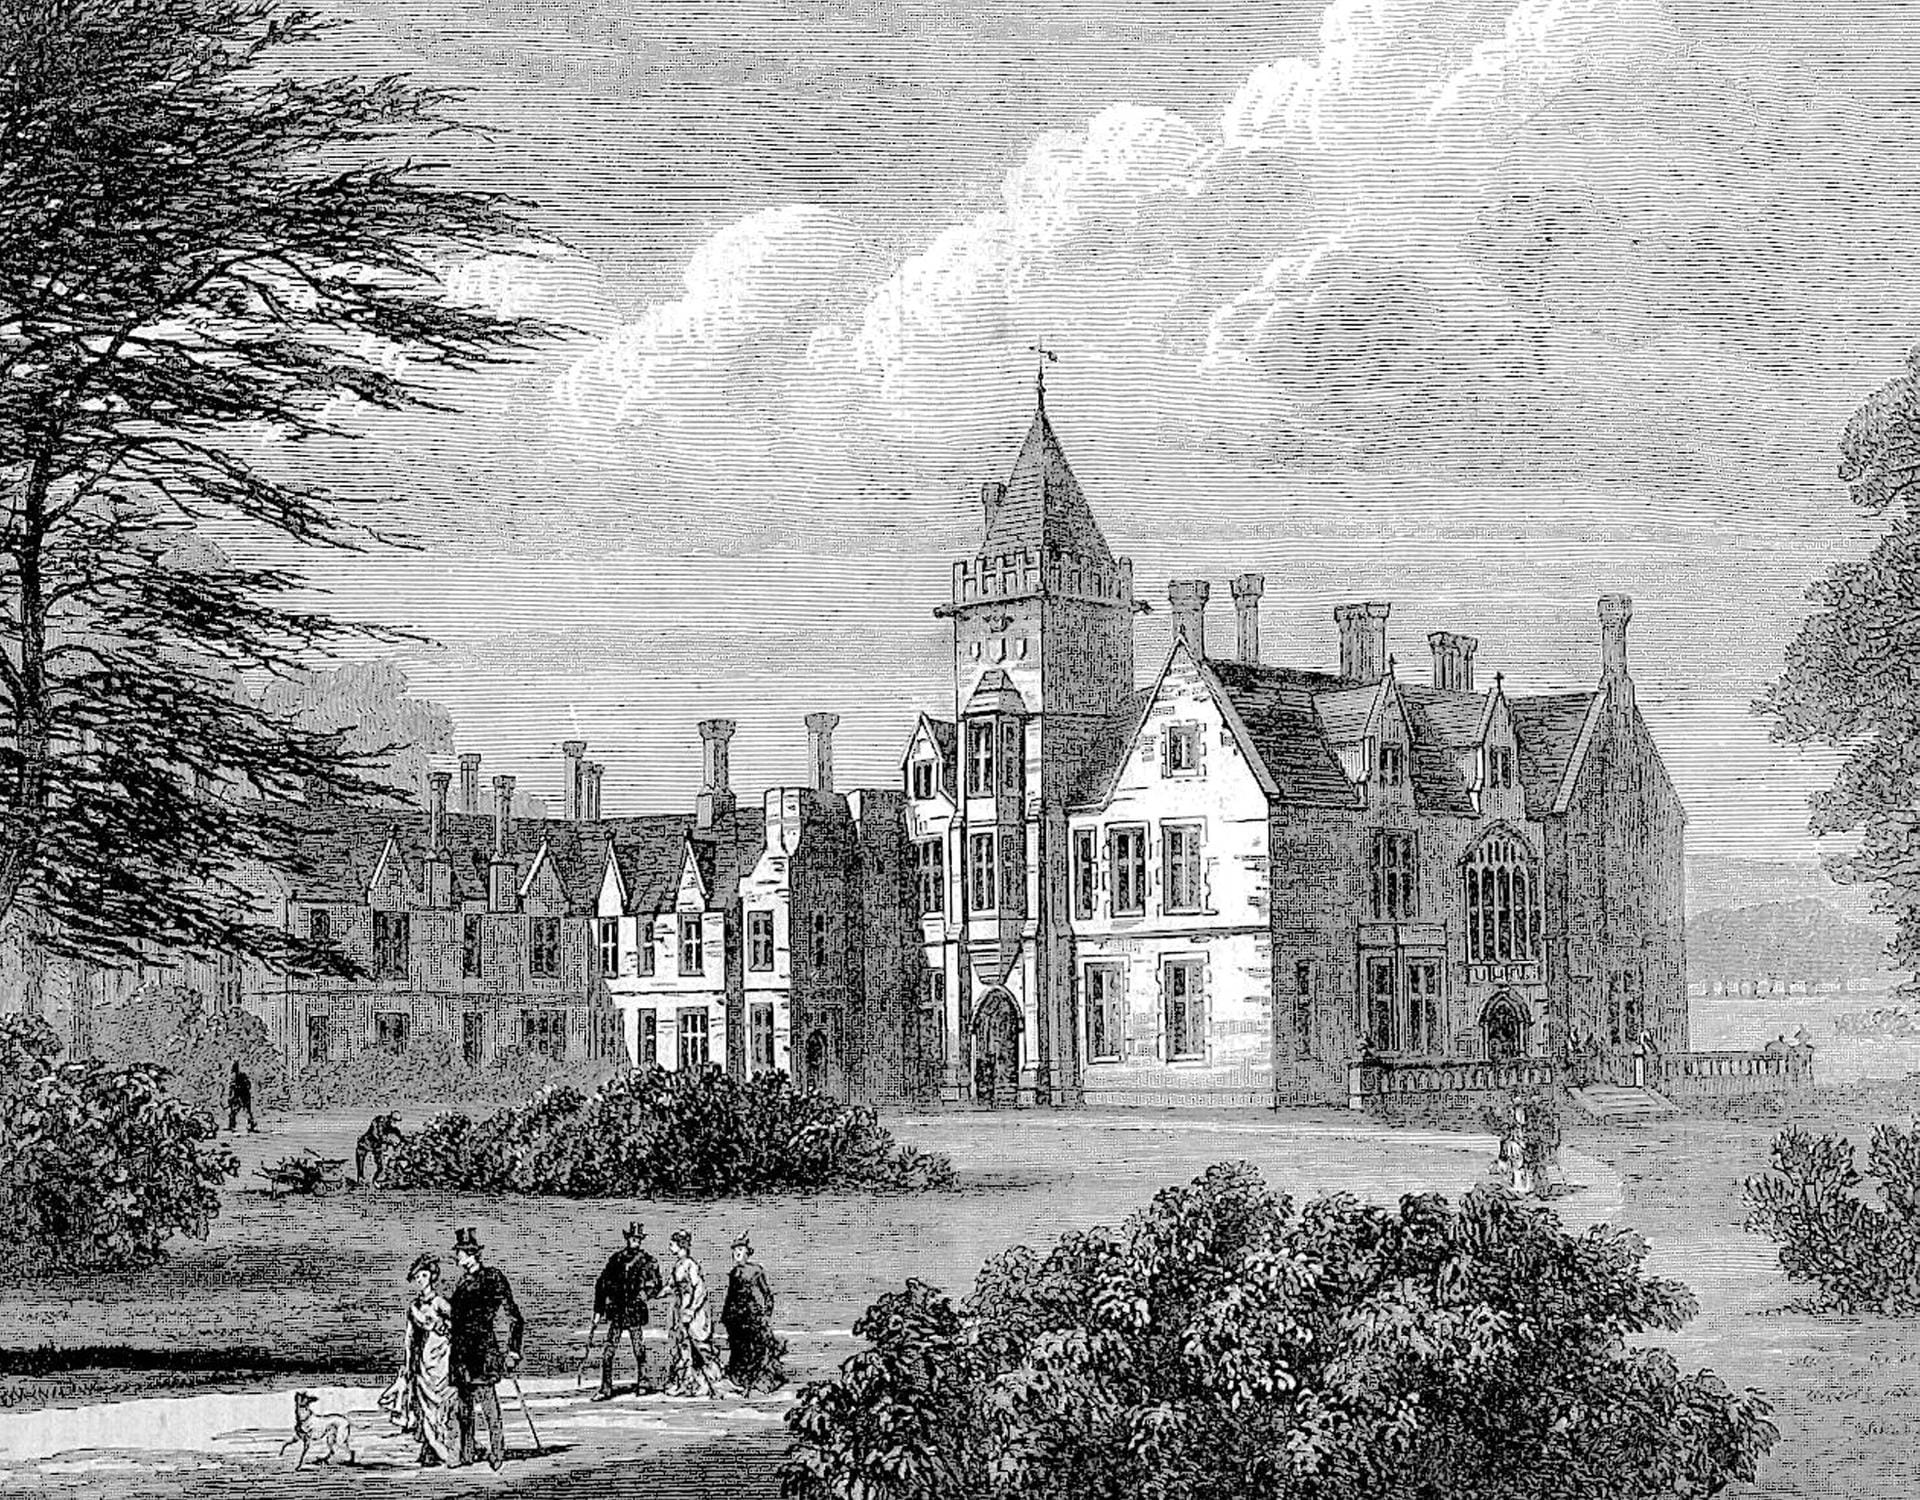 Bagshot Park: Diese Zeichnung aus dem späten 19. Jahrhundert zeigt den offiziellen Landsitz von Prinz Edward, dem jüngsten Sohn der Queen, und seiner Ehefrau Gräfin Sophie. Es liegt 18 Kilometer südlich von Windsor. (gemietet von der Krone)